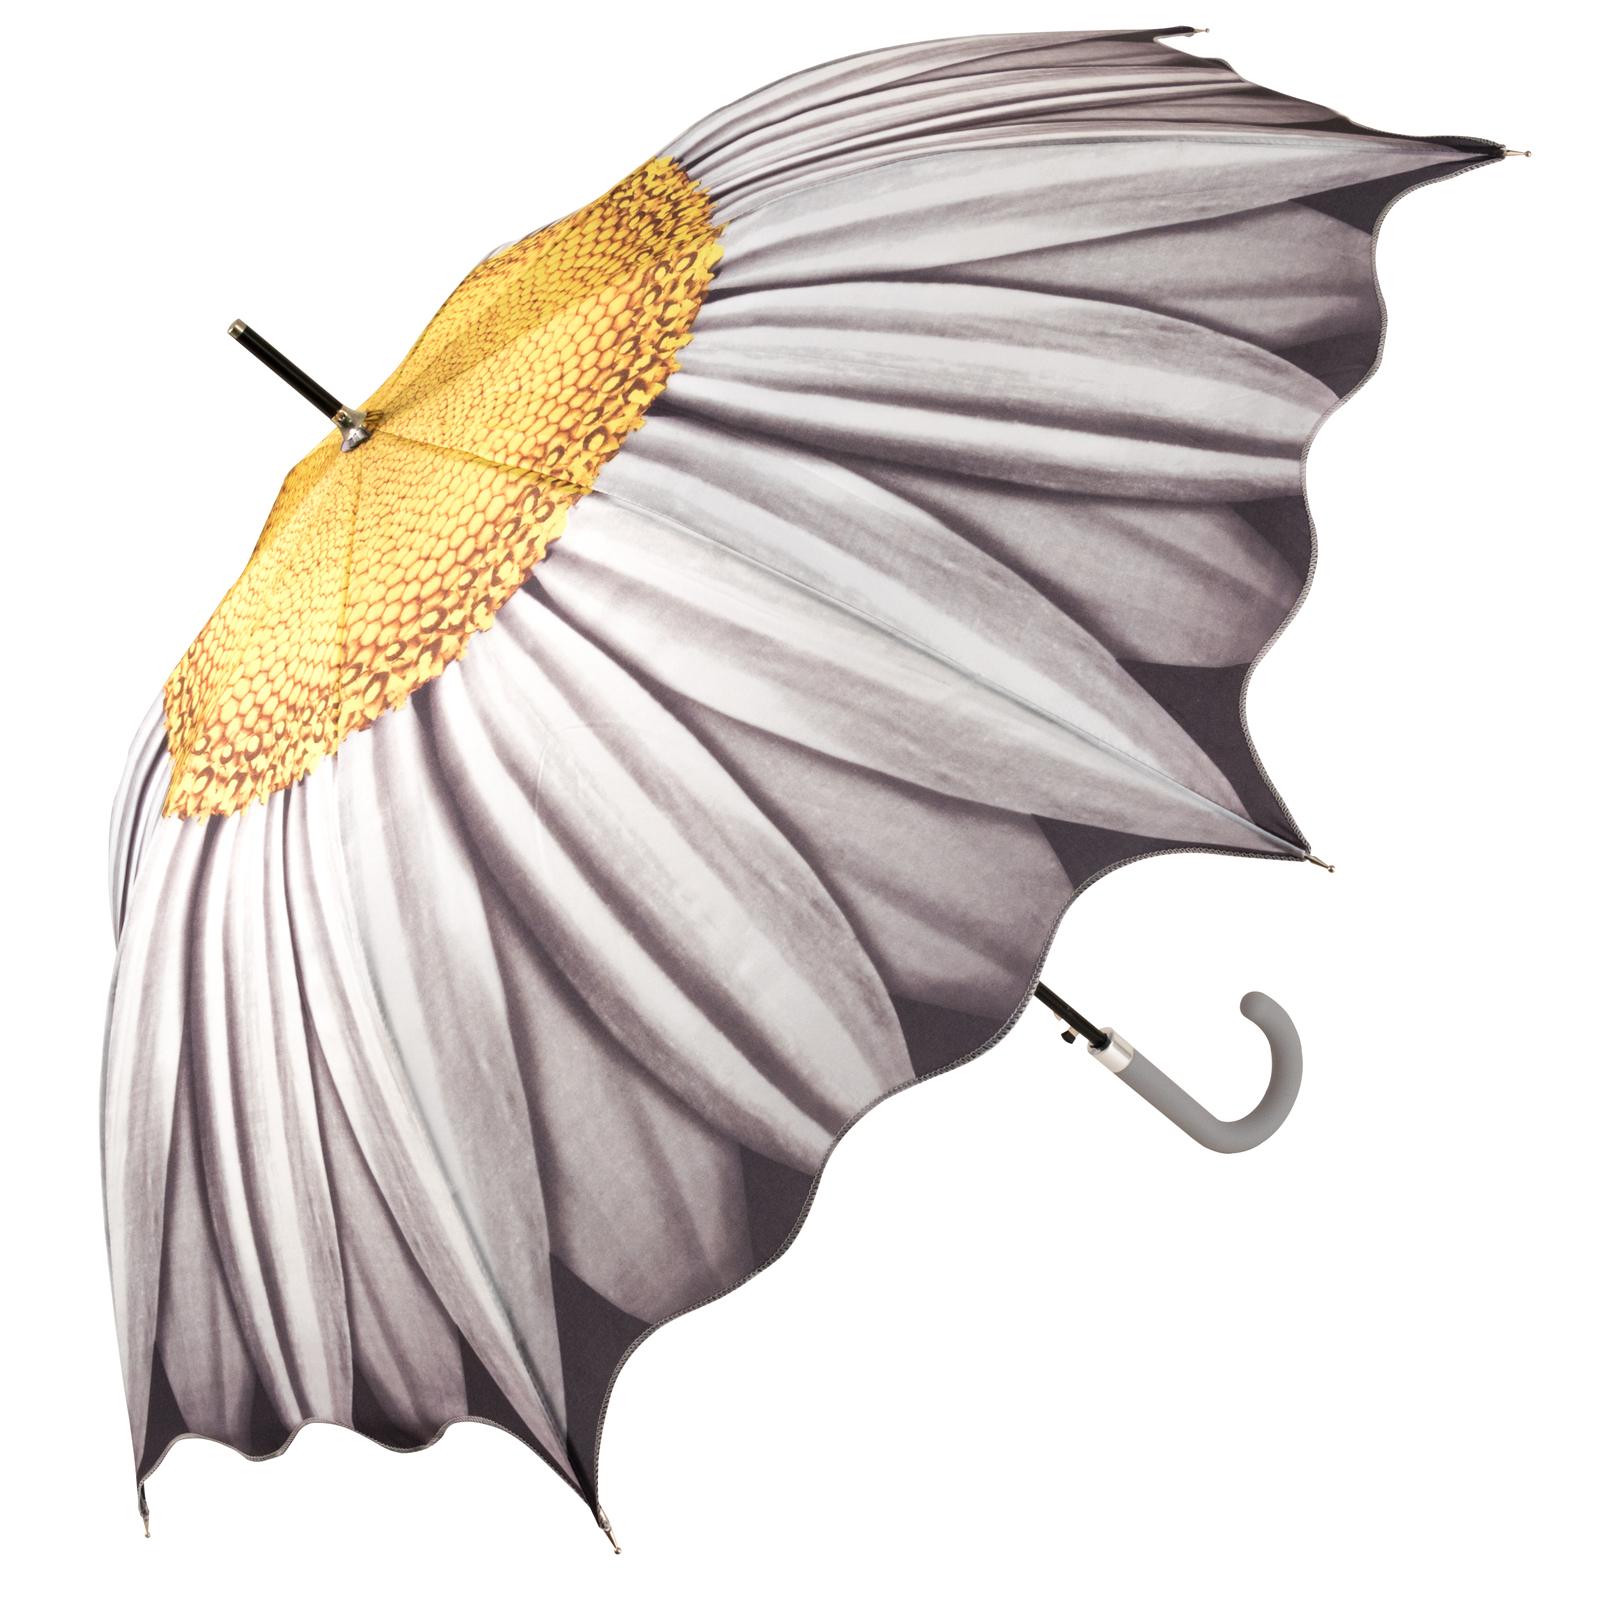 Full Canopy Flower Walking Length Umbrella - White Daisy